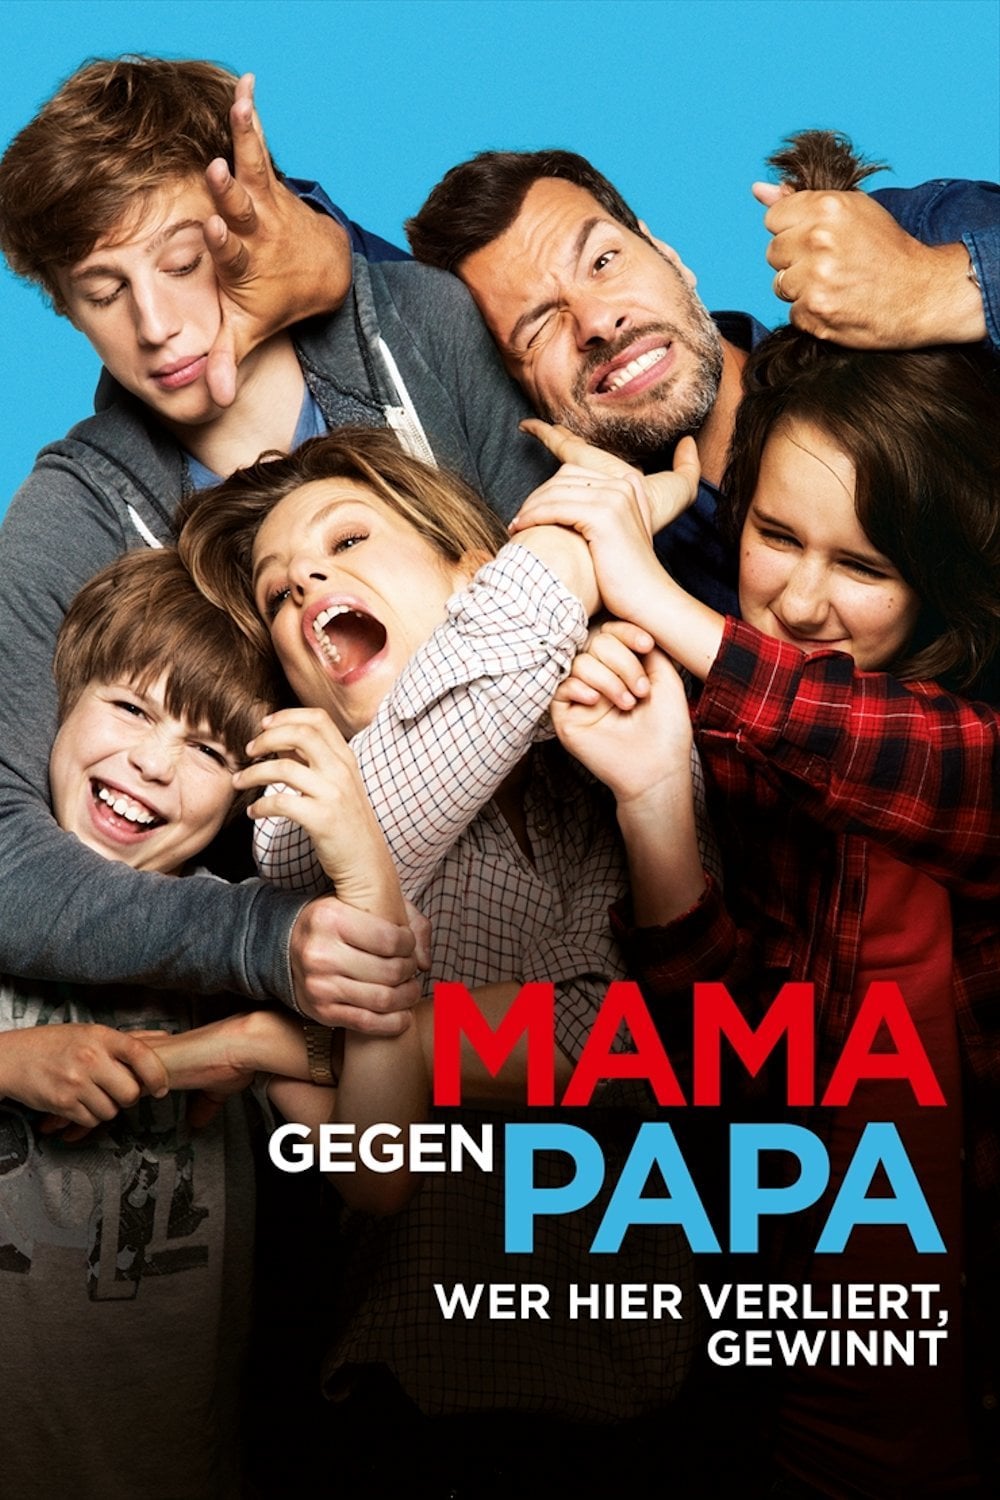 Plakat von "Mama gegen Papa"